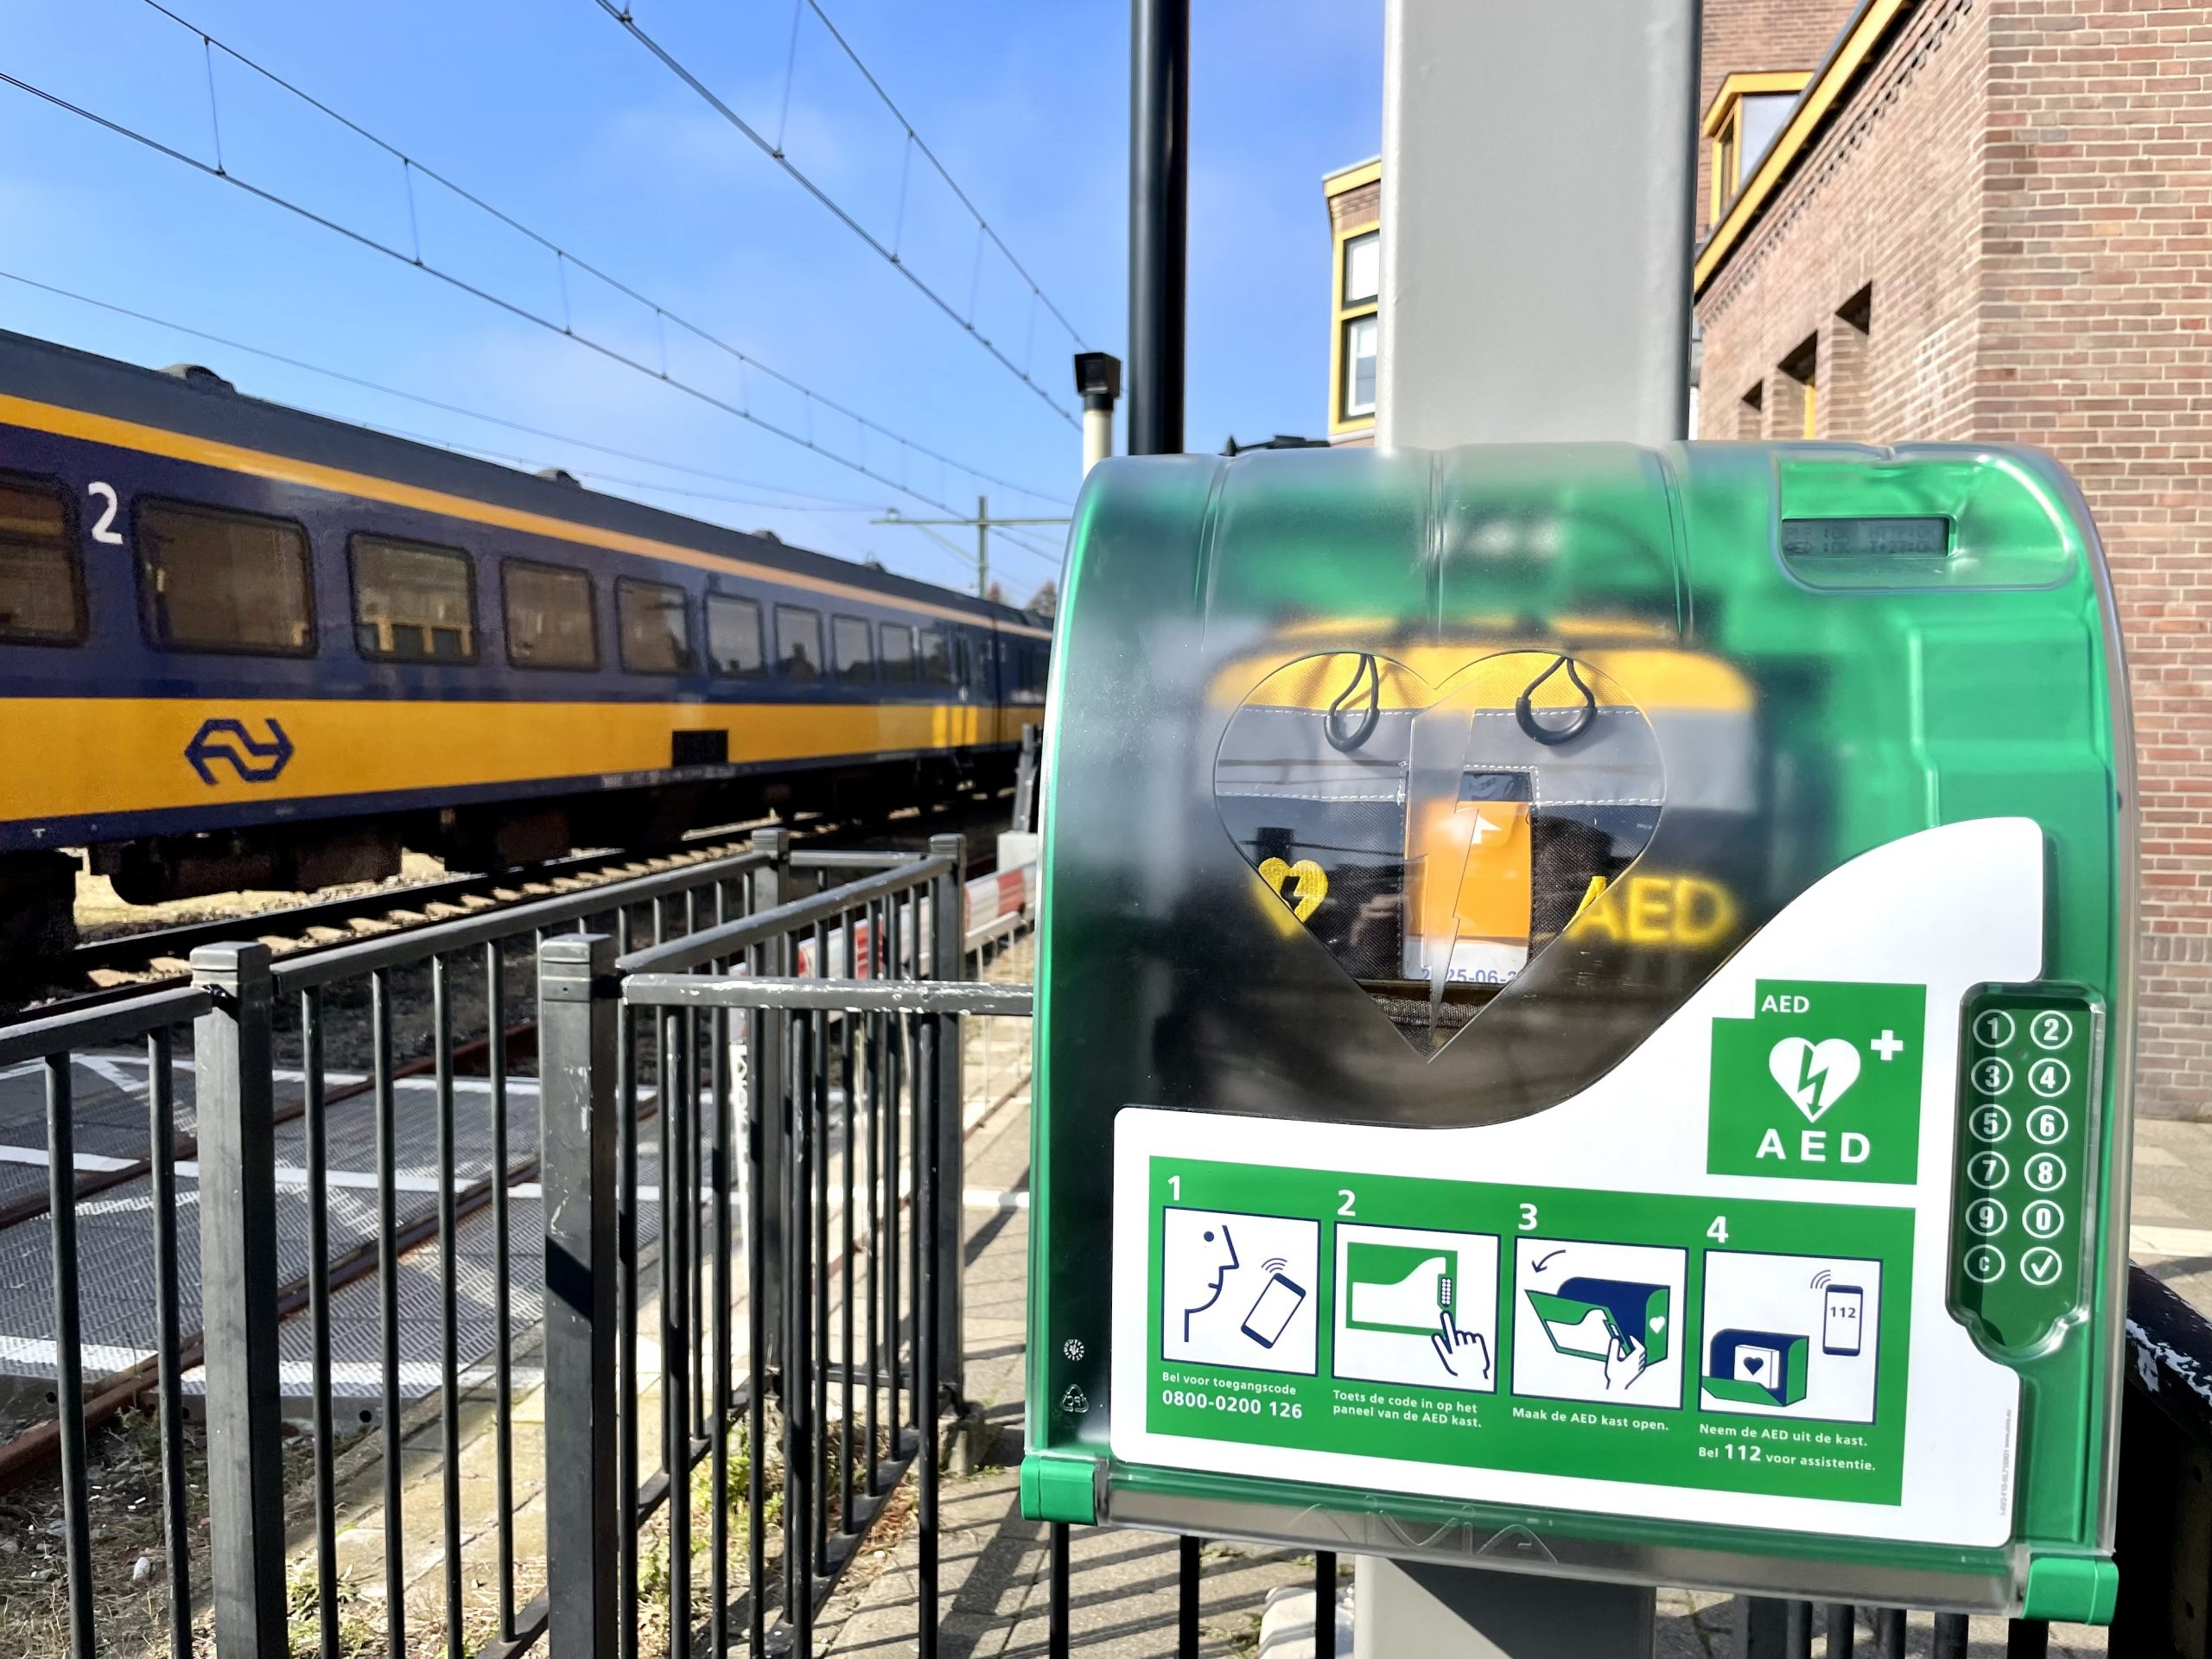 Все повече и повече станции в Холандия са оборудвани с AED